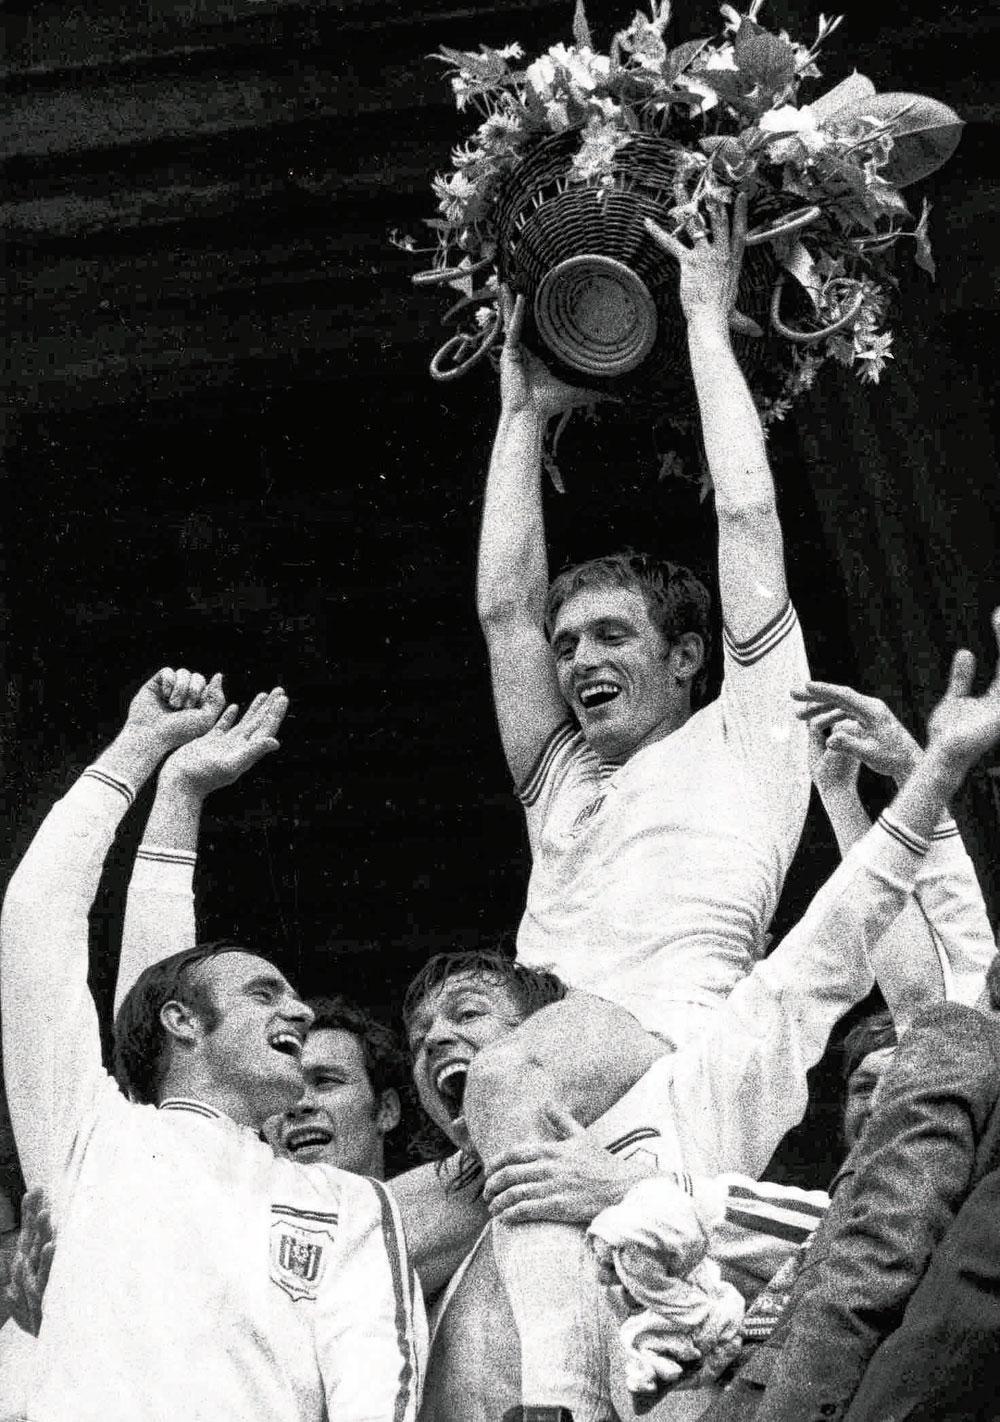 Op de schouders van Jan Mulder bij het vieren van de titel in 1972.